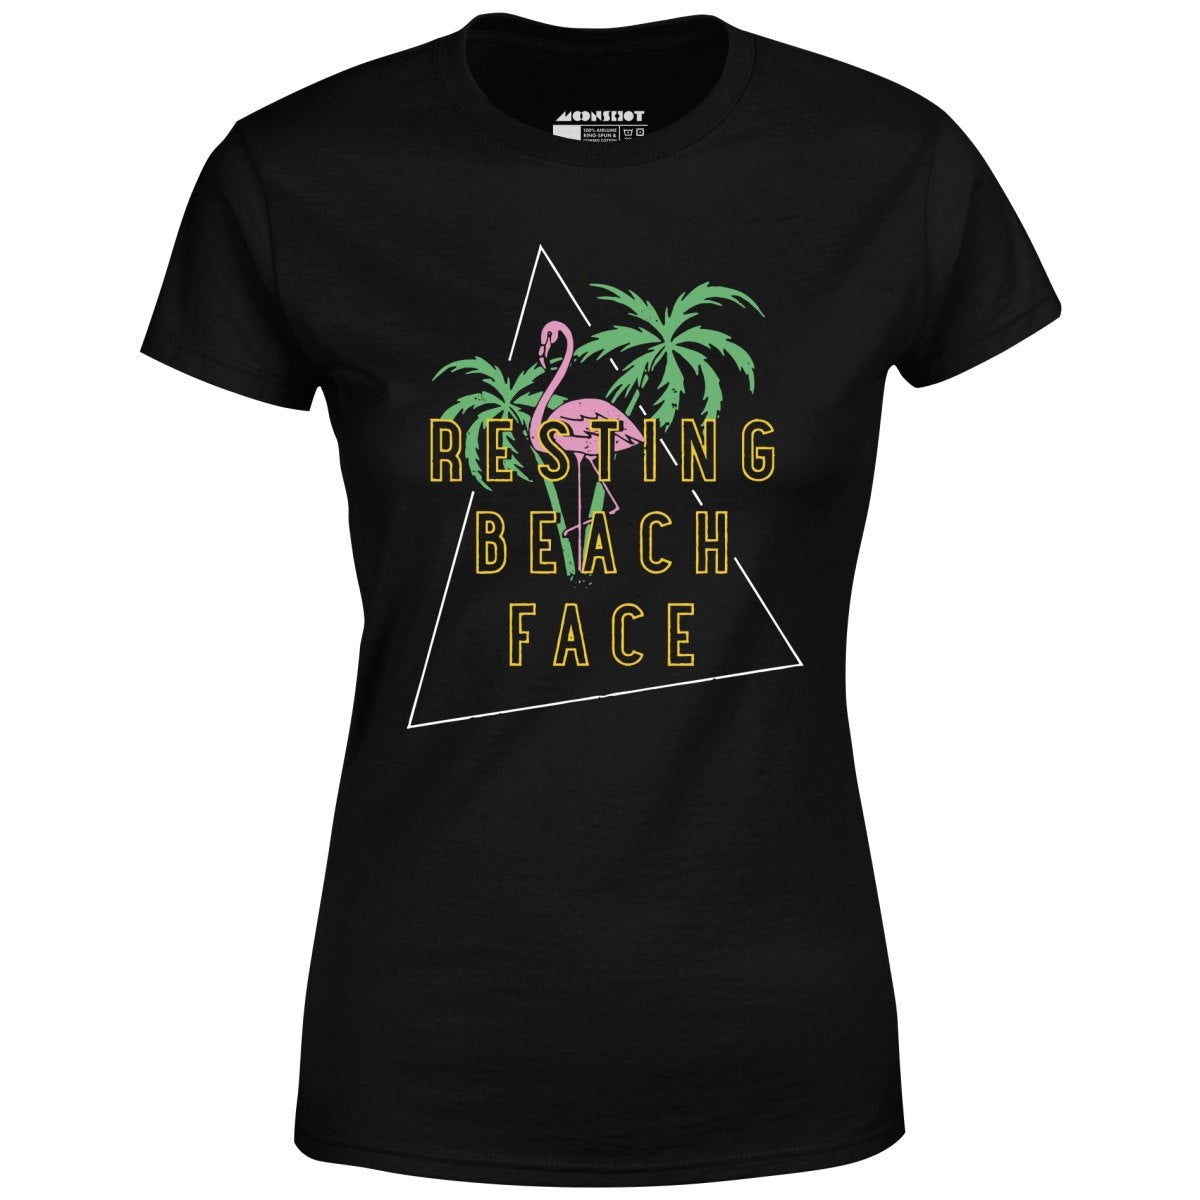 Resting Beach Face - Women's T-Shirt